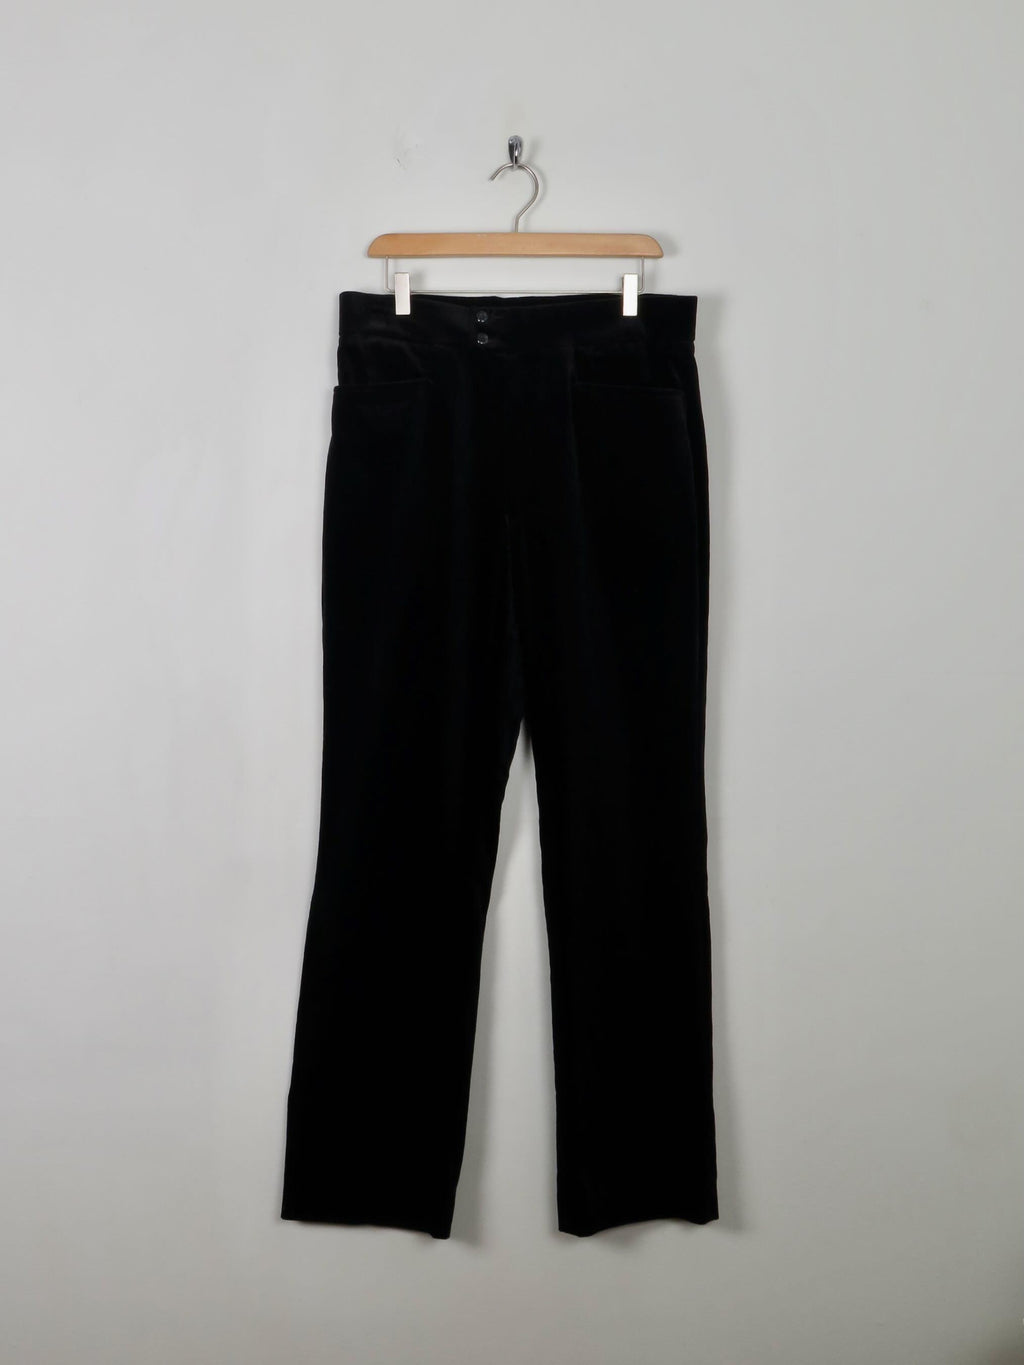 Men's Vintage Style Black Velvet Trousers  32"W 32" L - The Harlequin